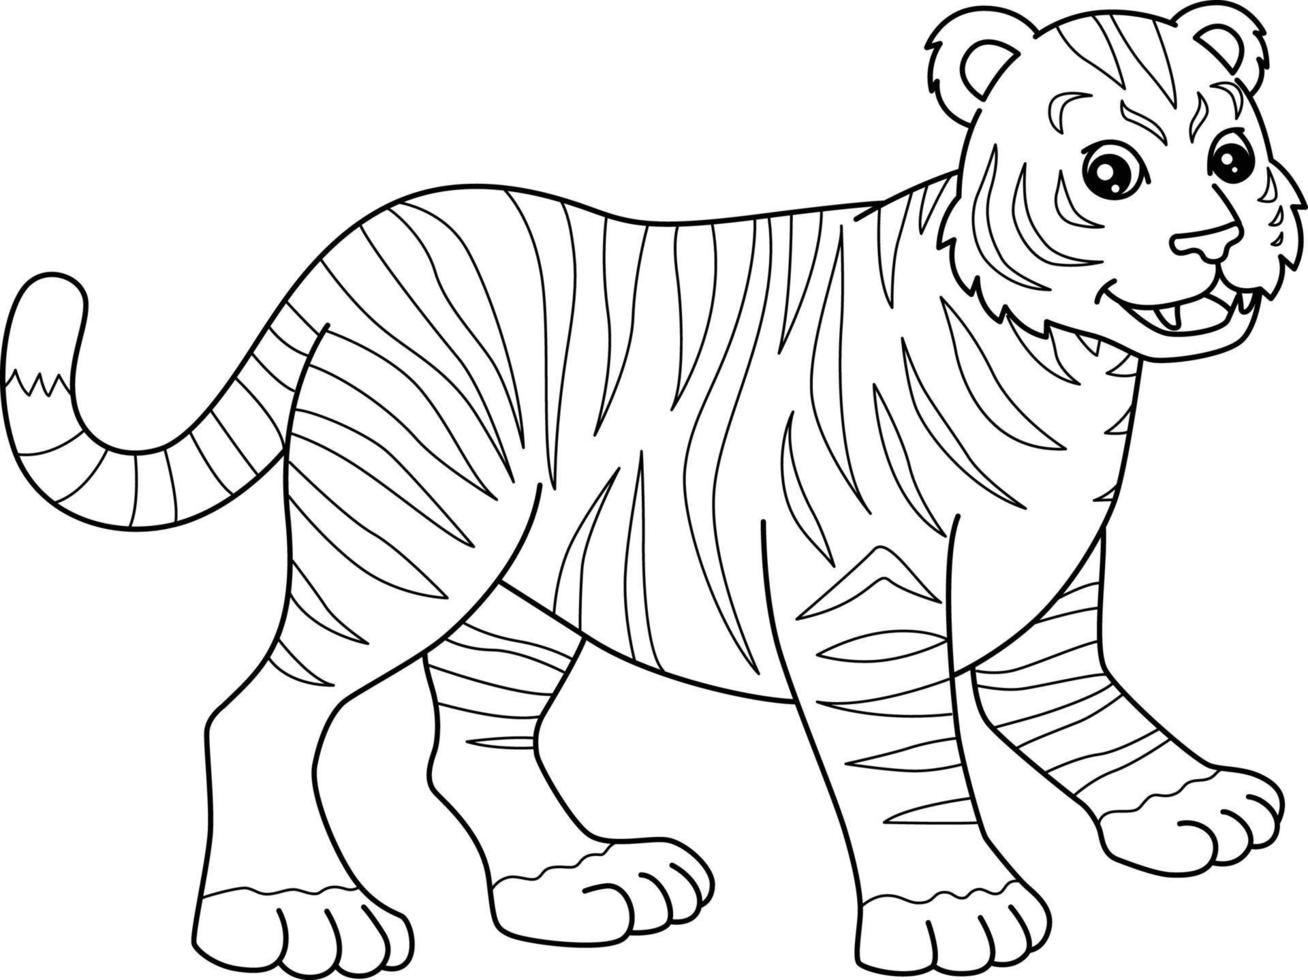 página para colorear de tigre aislada para niños 5163271 Vector en Vecteezy